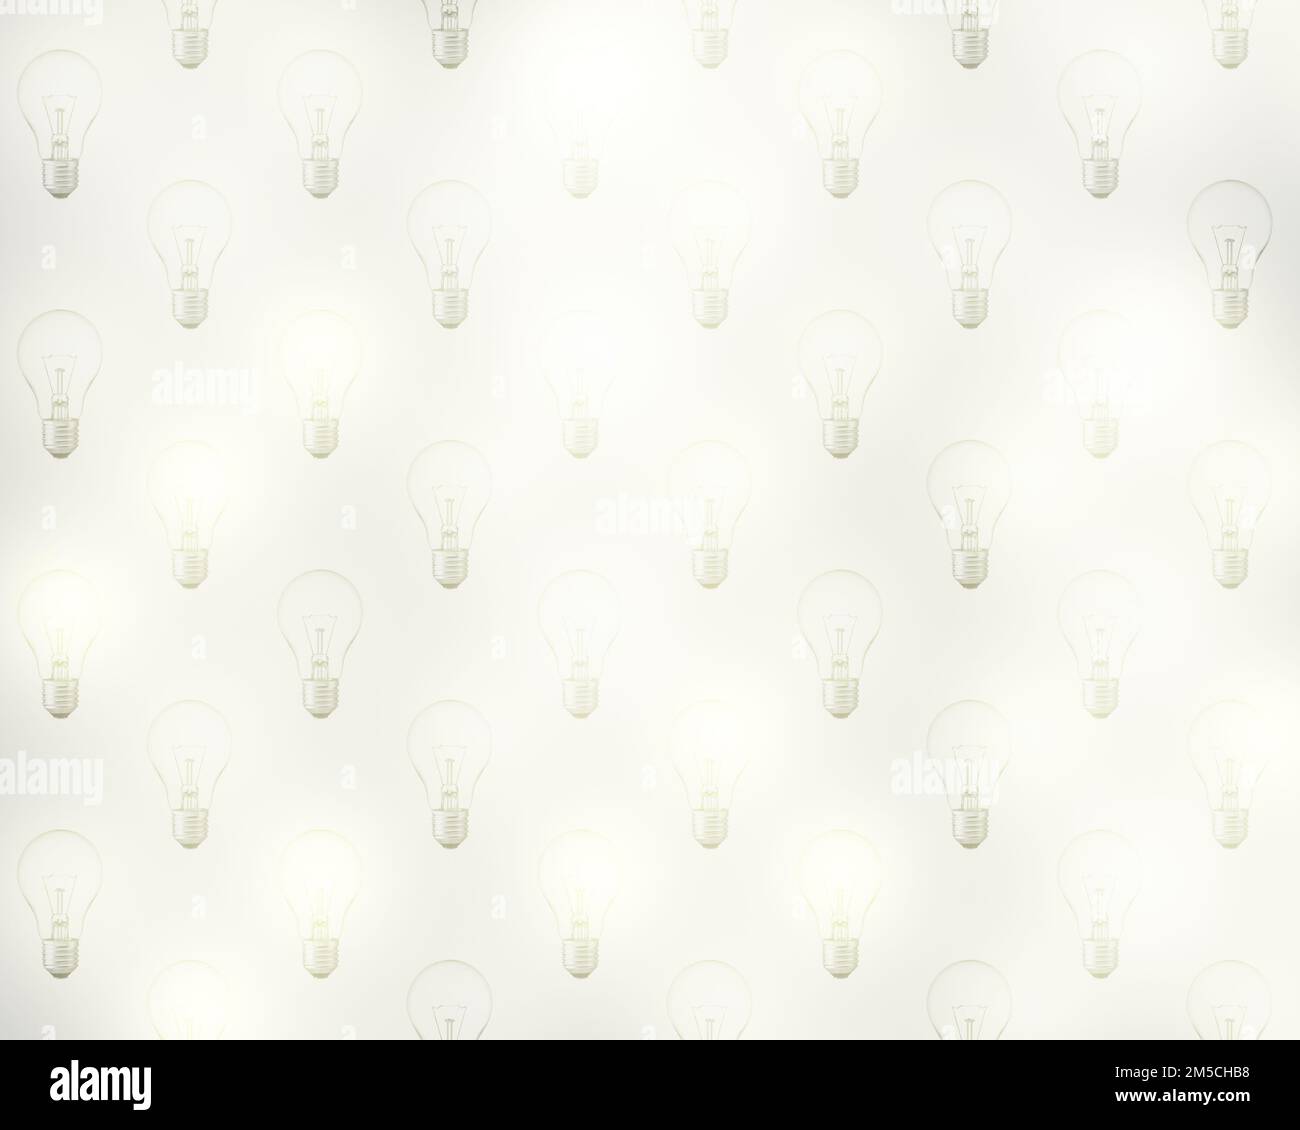 Schéma de nombreuses ampoules, toutes les ampoules sont allumées et lumineuses. Illustration du concept de gaspillage et d'économie d'énergie et d'économie d'énergie. Banque D'Images